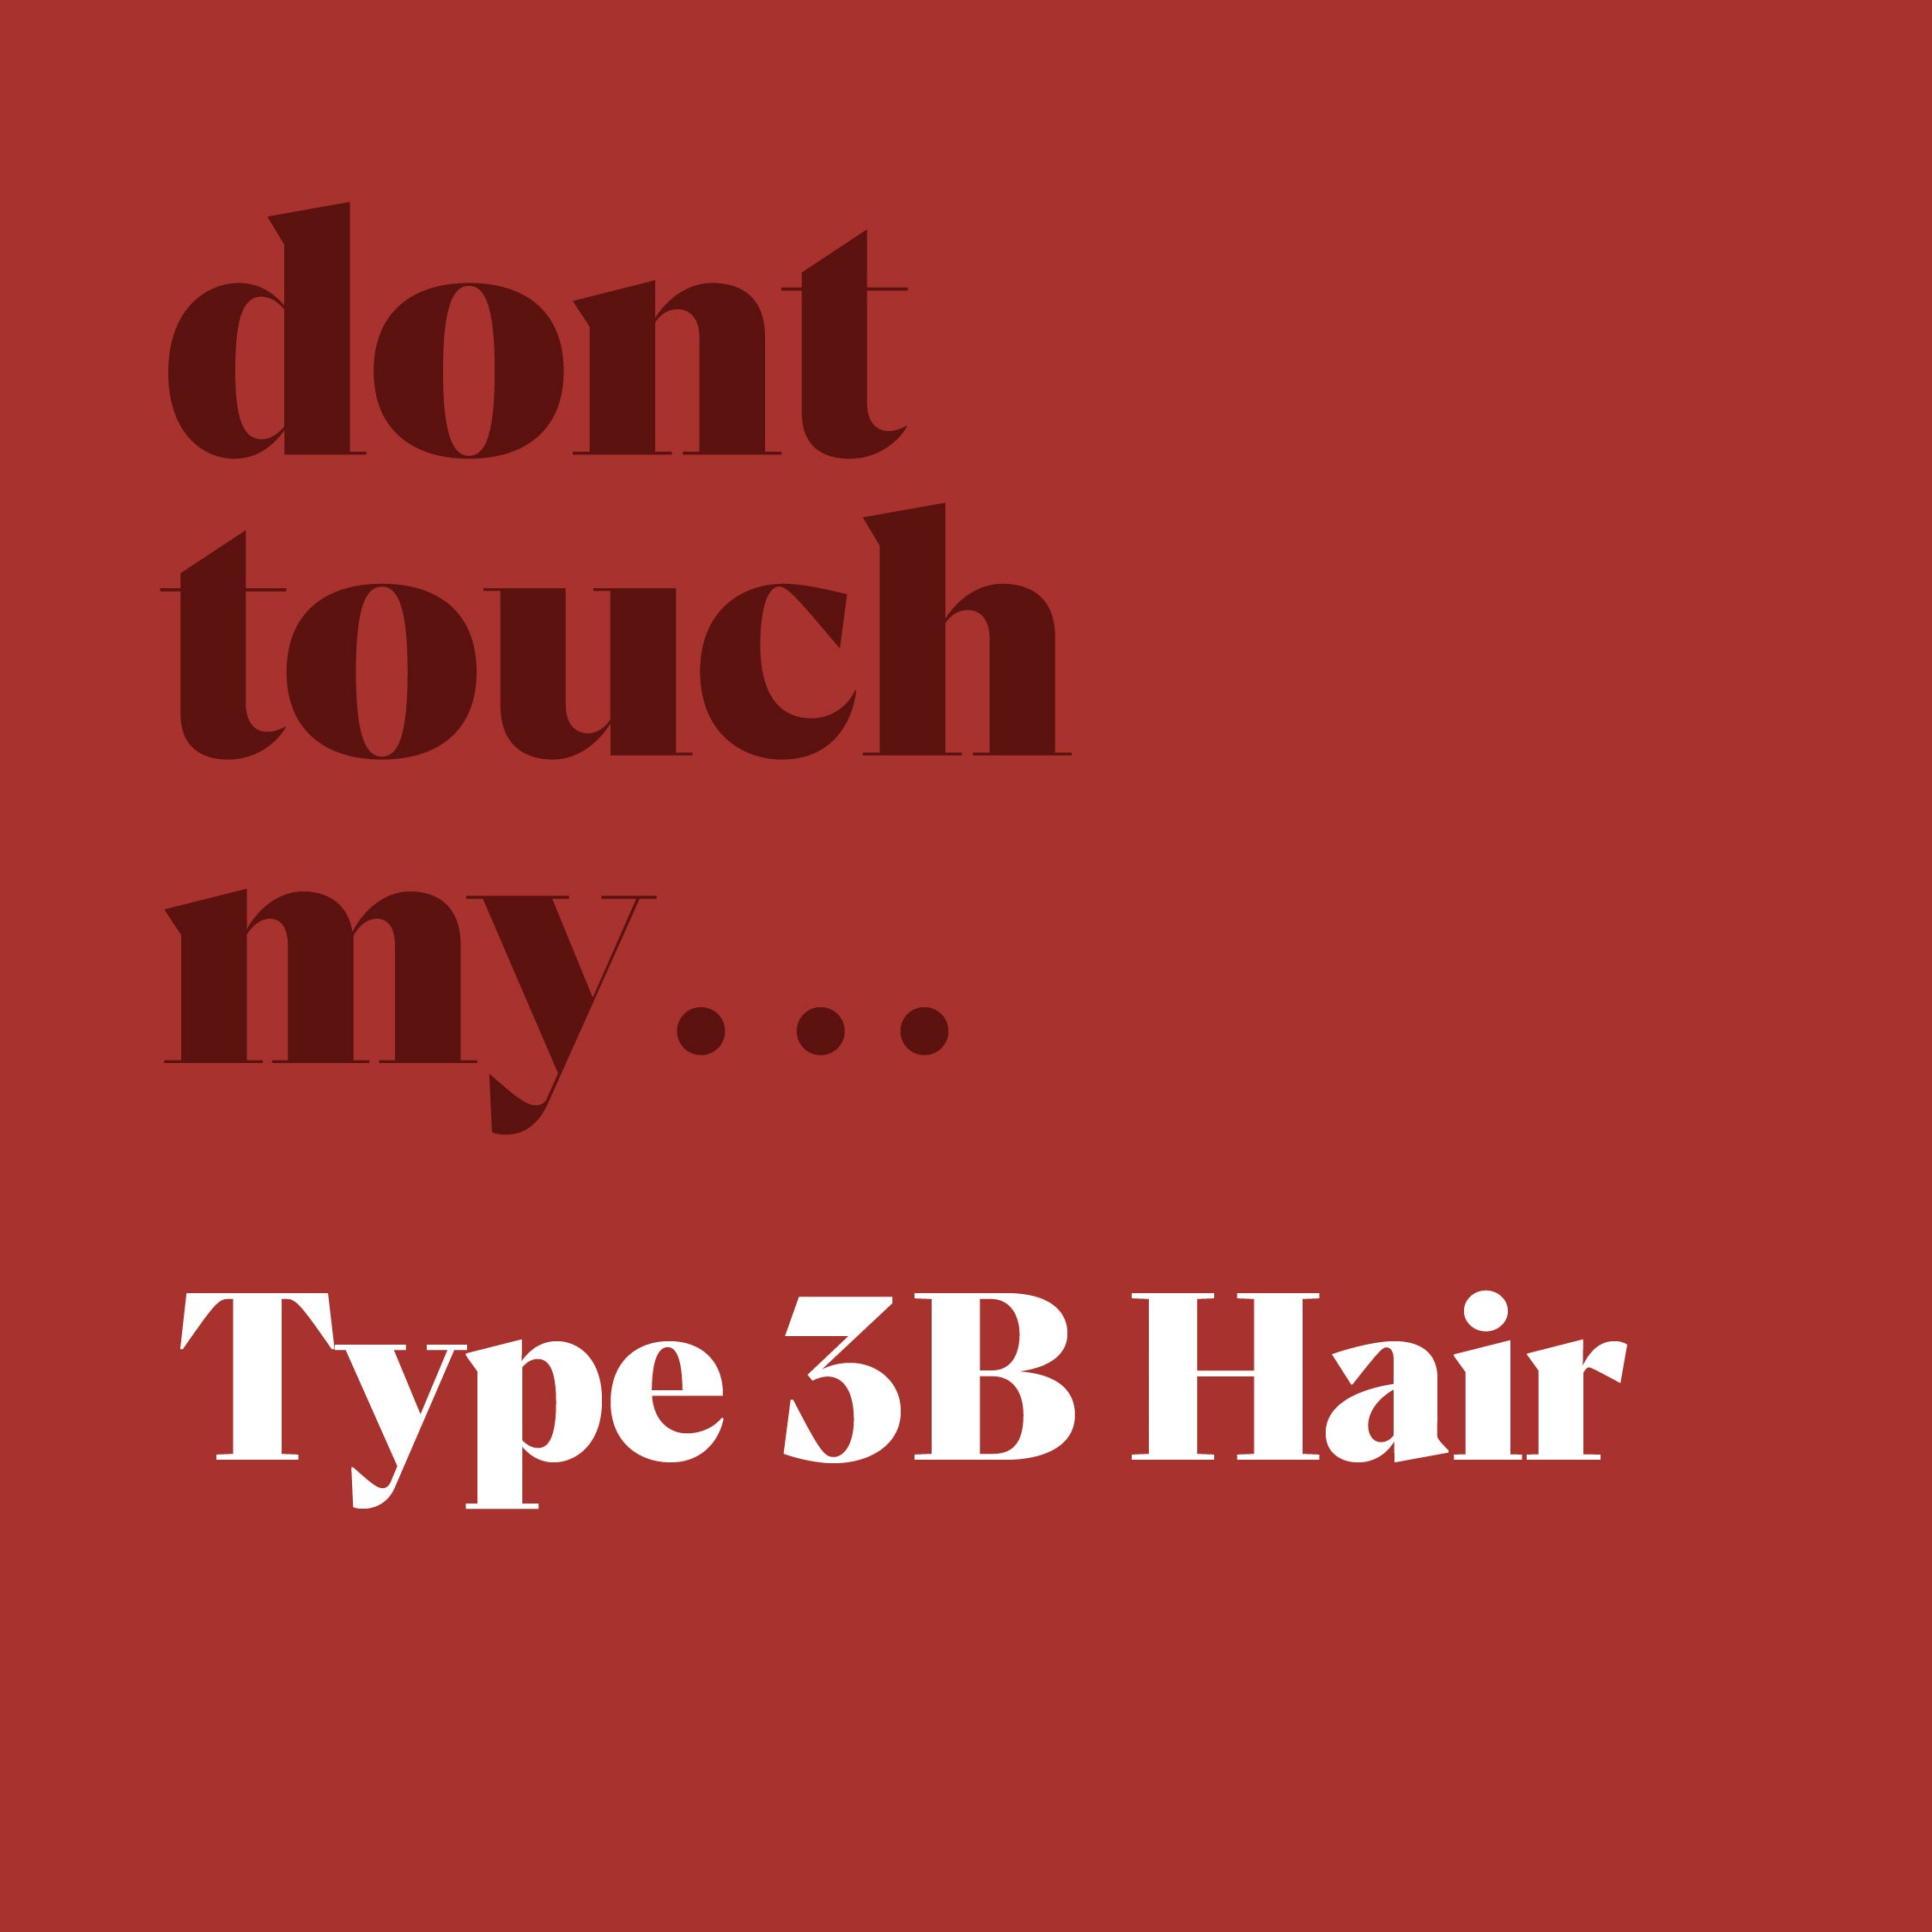 Type 3B hair kit bundle